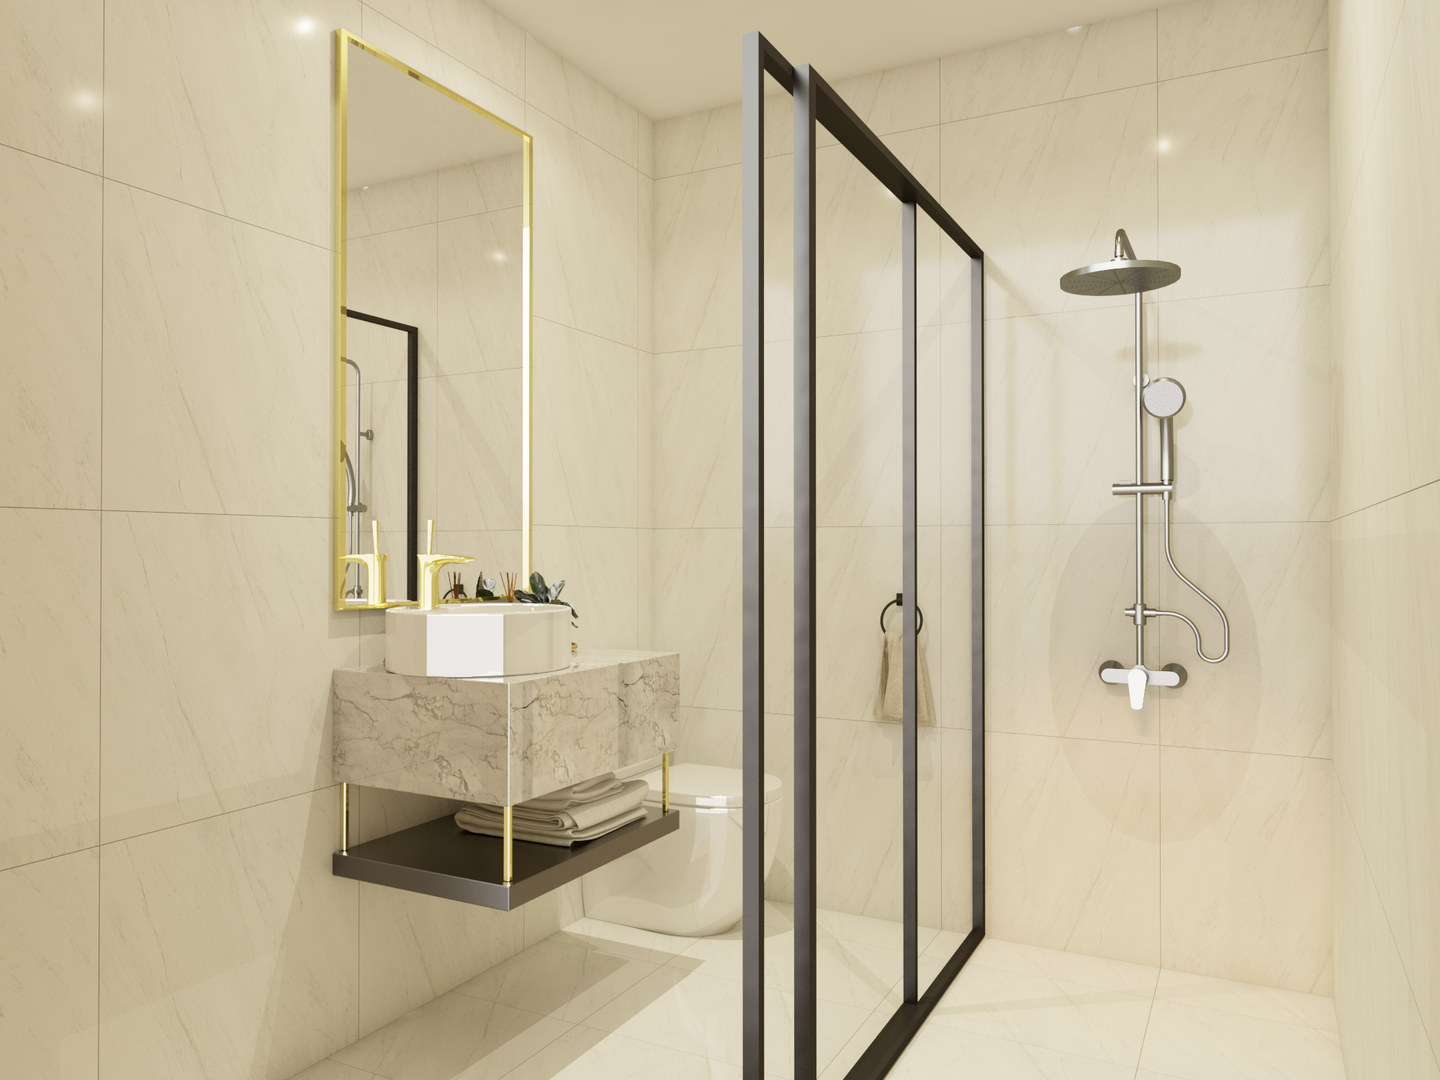 Rectangular Mirror Multi-Functional Spacious Bathroom Design - Livspace